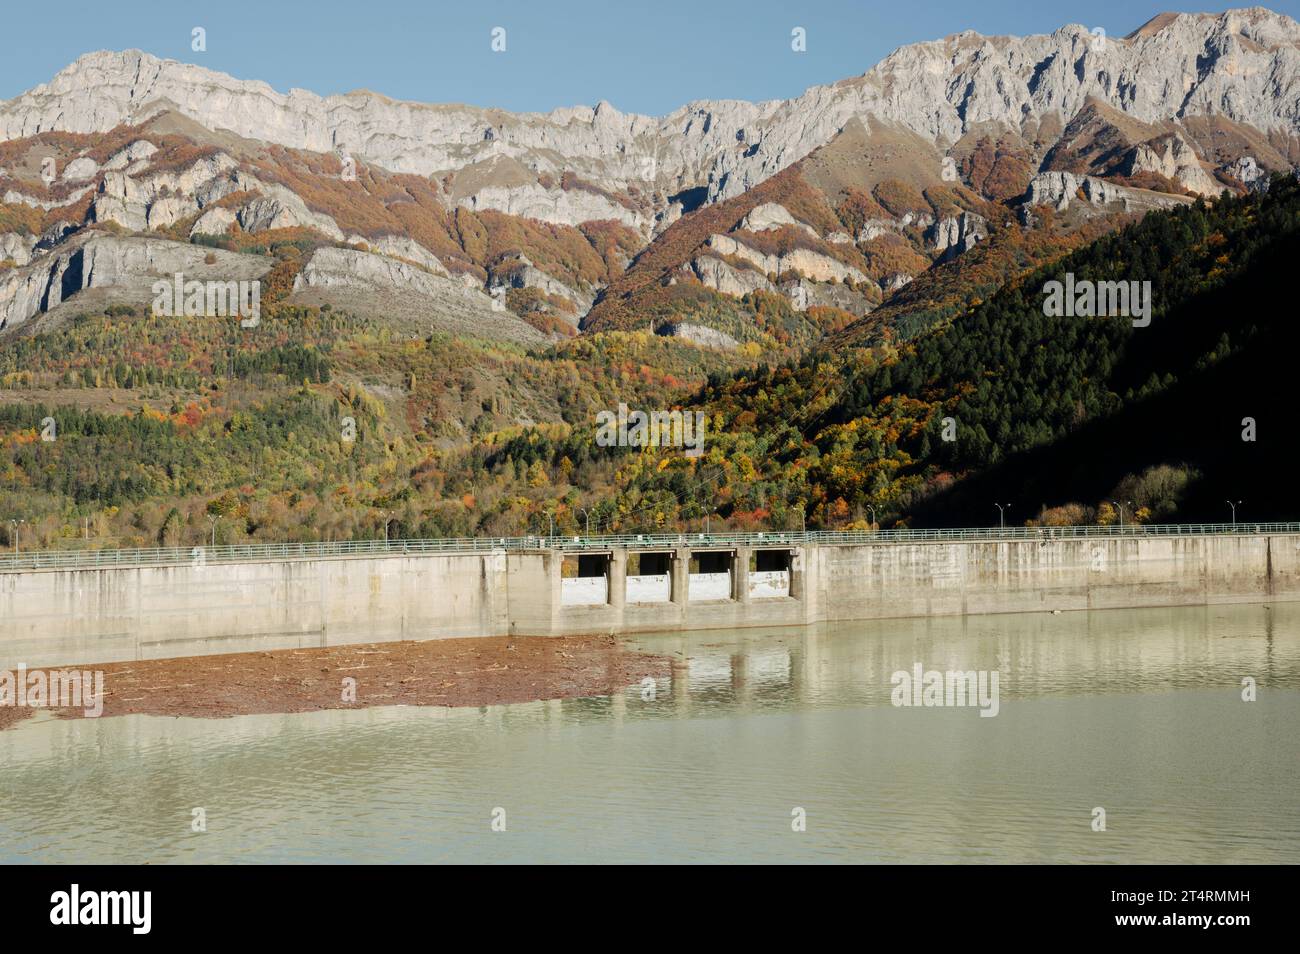 Barrage d'Entraque et Lago della Piastra (Alpes Maritimes, Cuneo, Piémont, Italie). Panorama du barrage en automne Banque D'Images